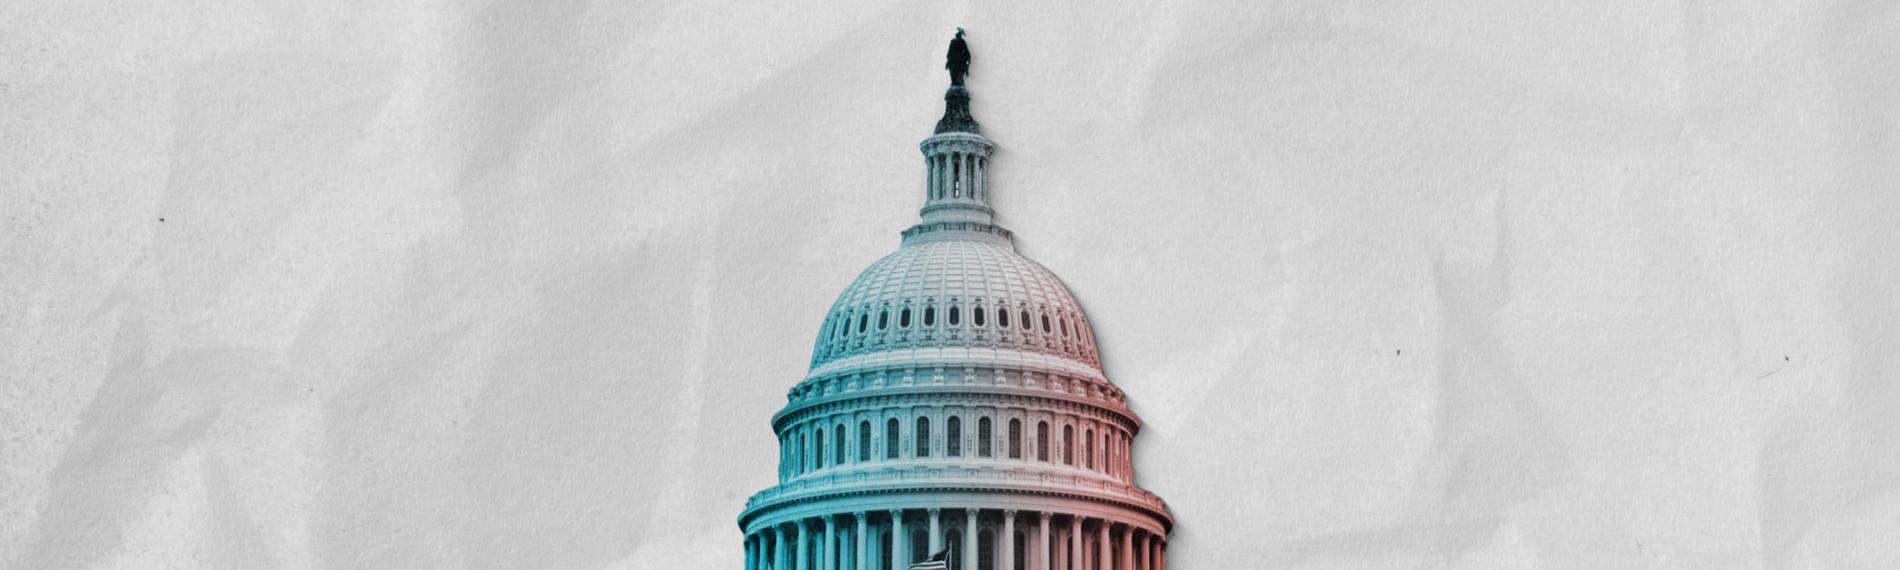 Kapitol in Washington - Gerrymandering ist vor den Zwischenwahlen in den USA wieder Thema